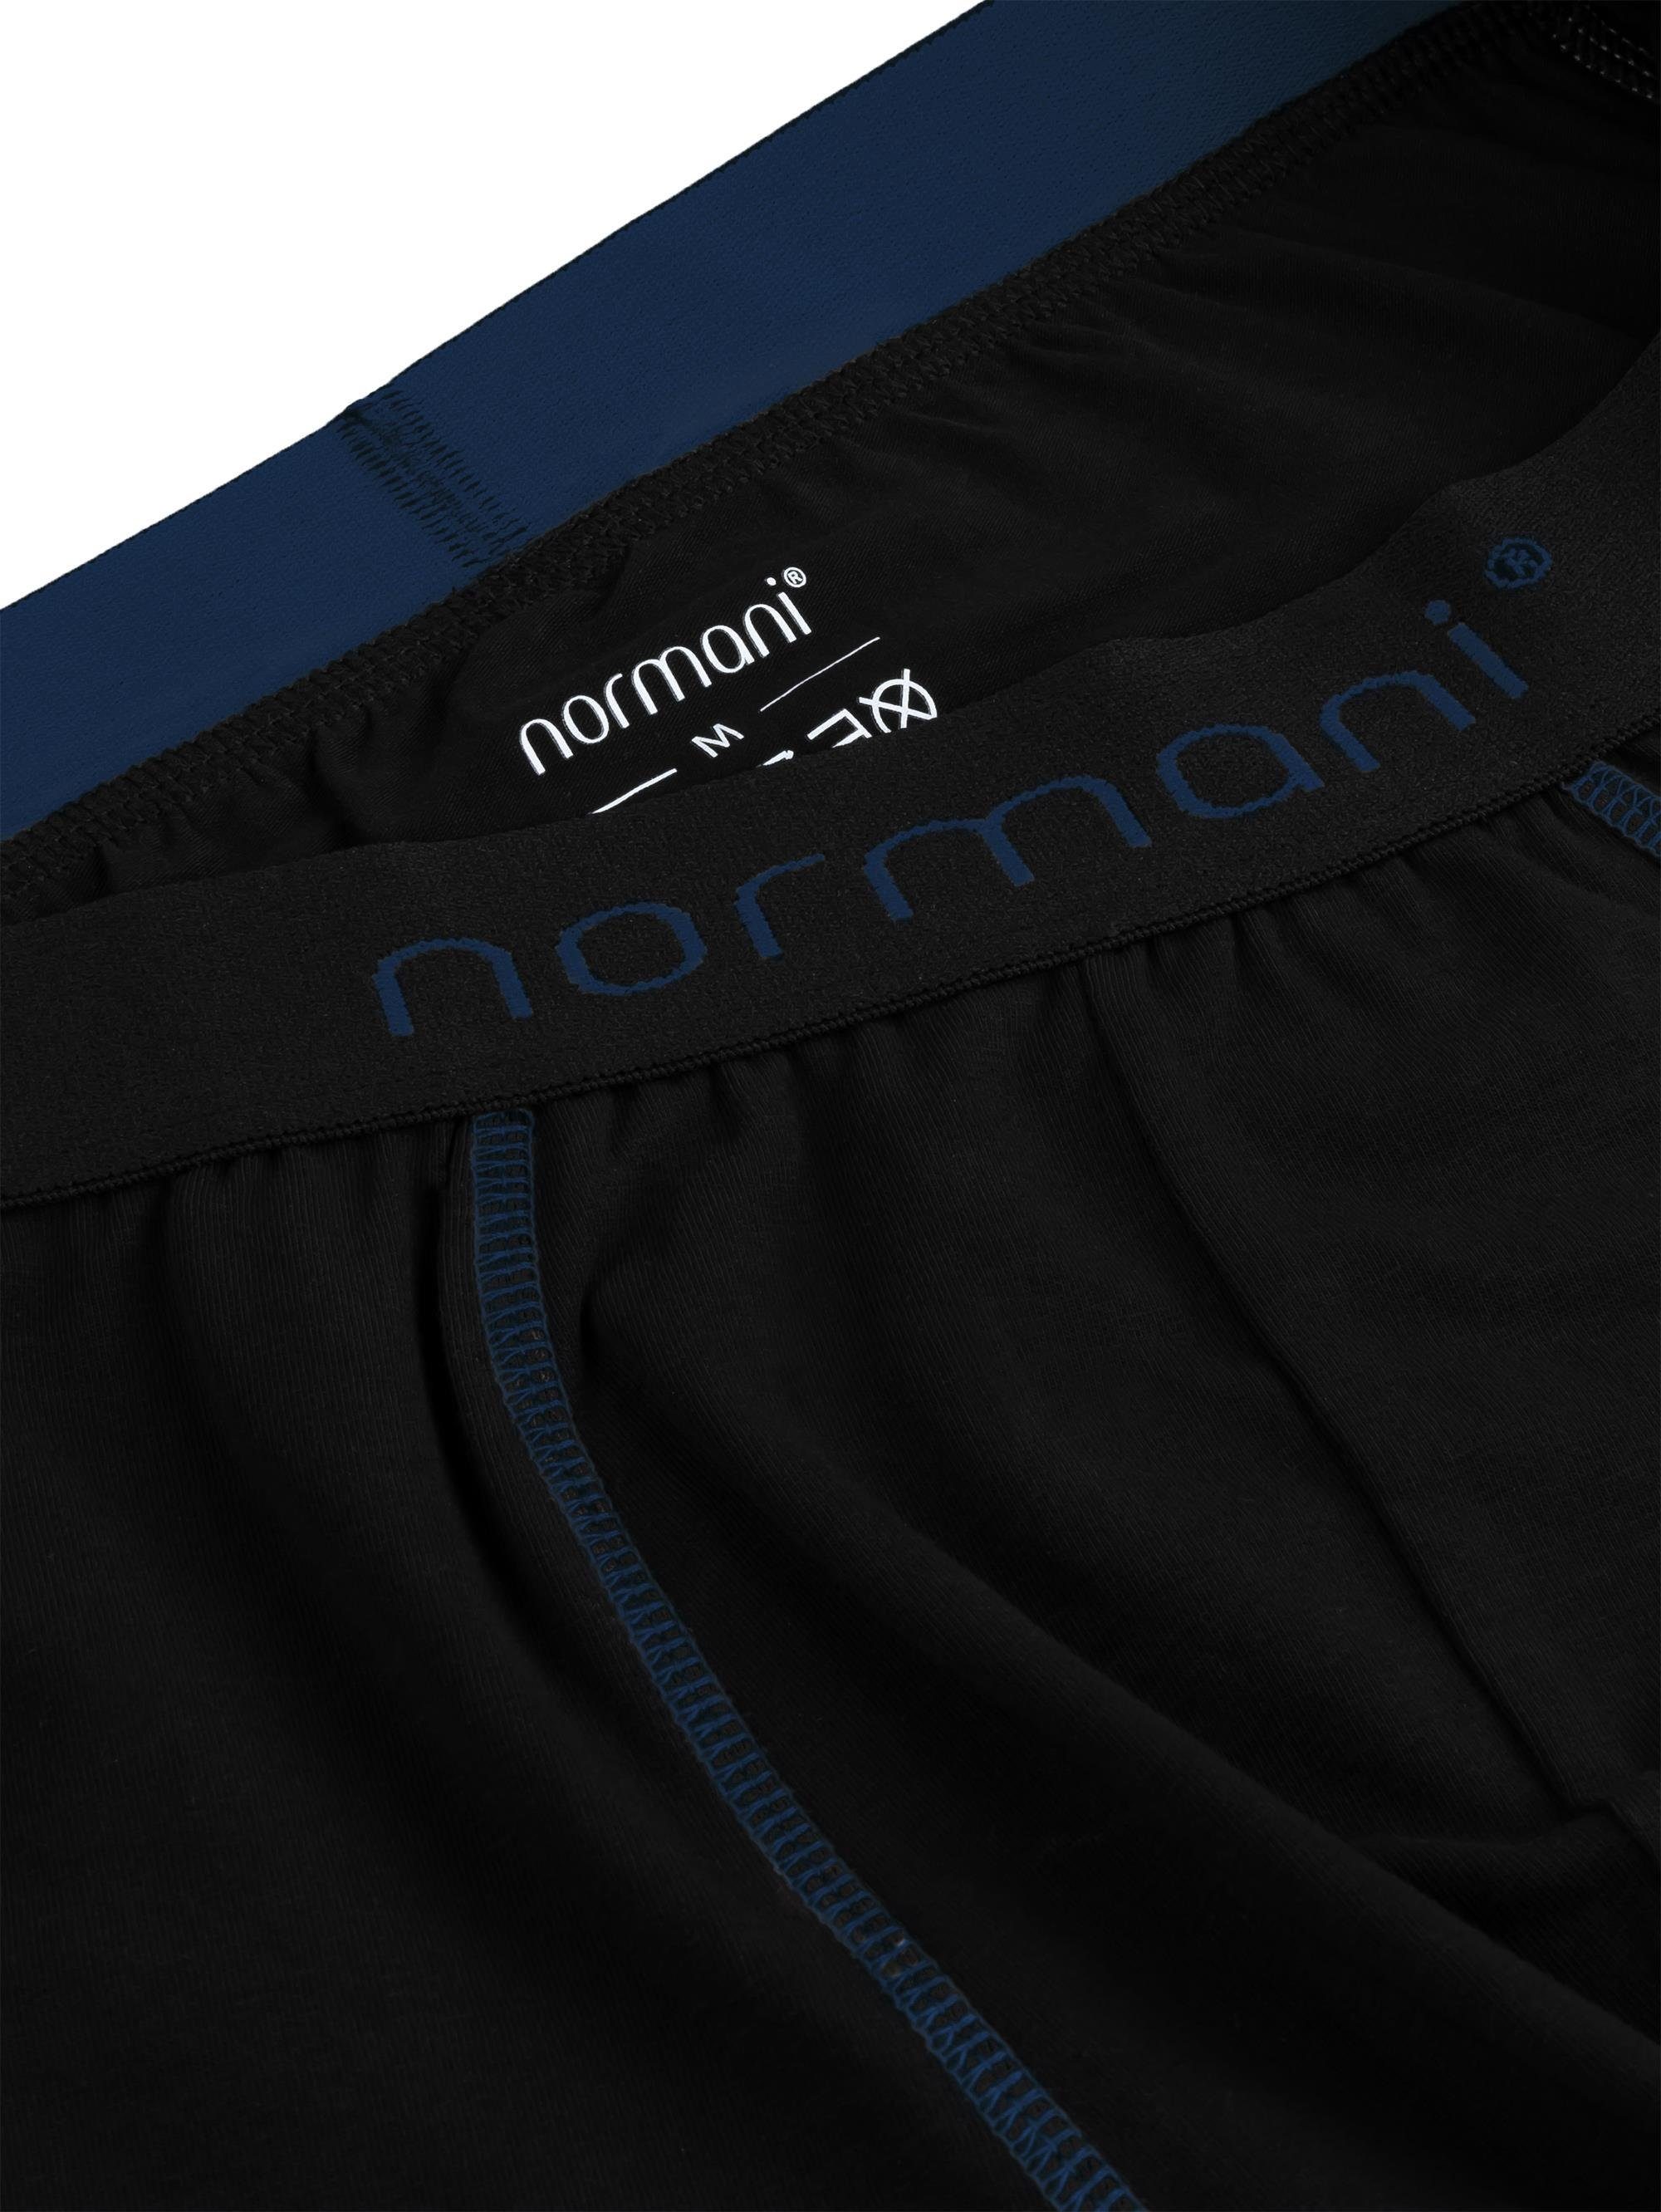 normani Boxershorts 6 aus Männer für Herren Baumwolle Dunkelblau atmungsaktiver Baumwoll-Boxershorts Unterhose